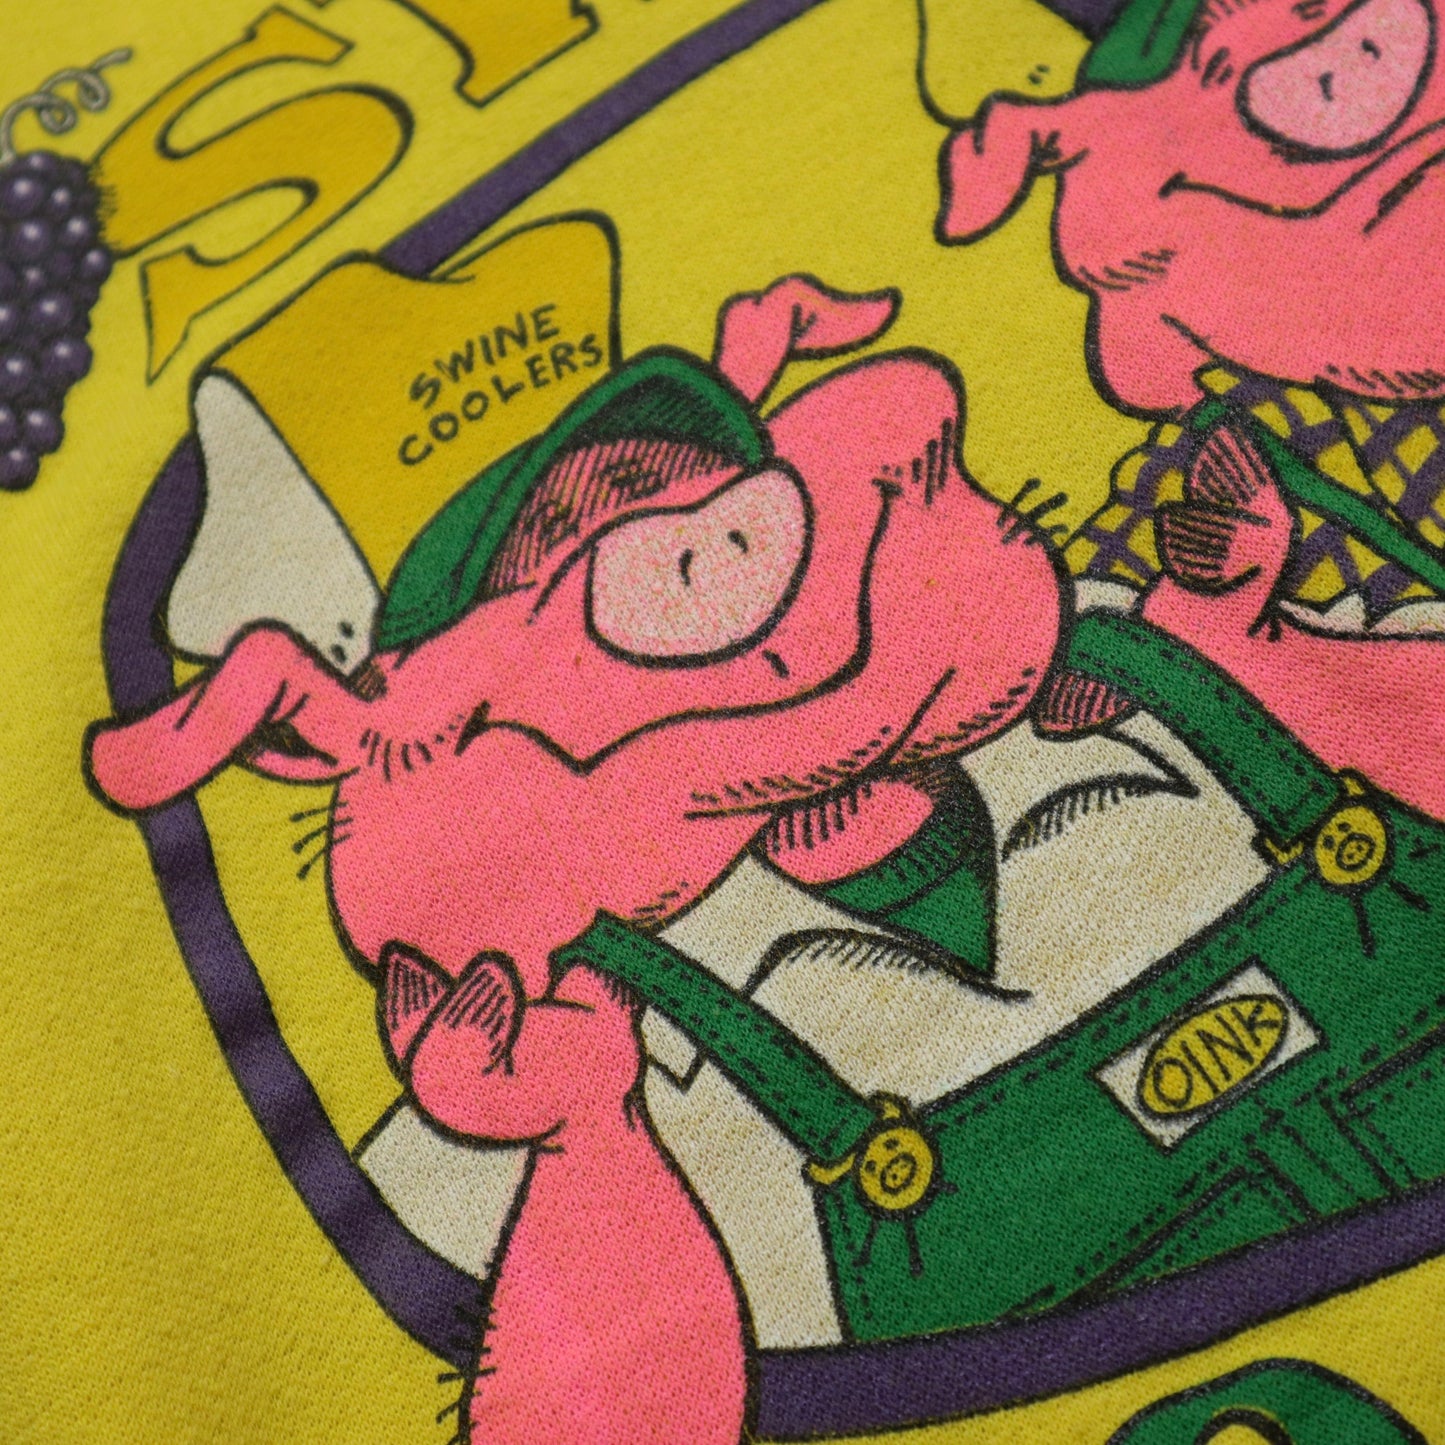 1980年代 アメリカ製 Swine Coolers スウェットシャツ、ピギーイエローの半袖スウェットシャツ